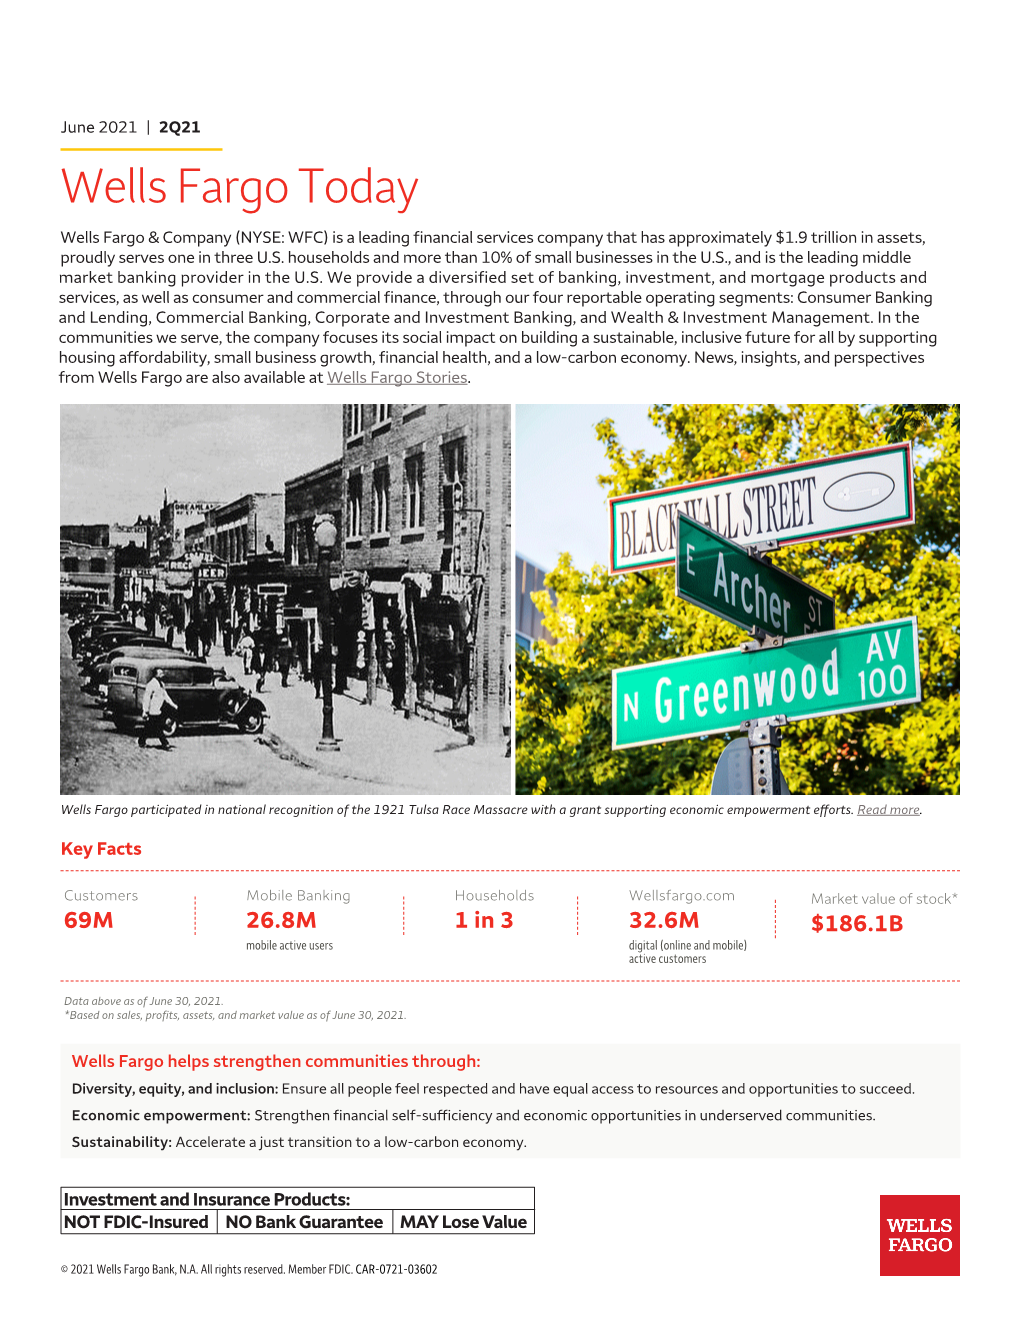 Wells Fargo Today